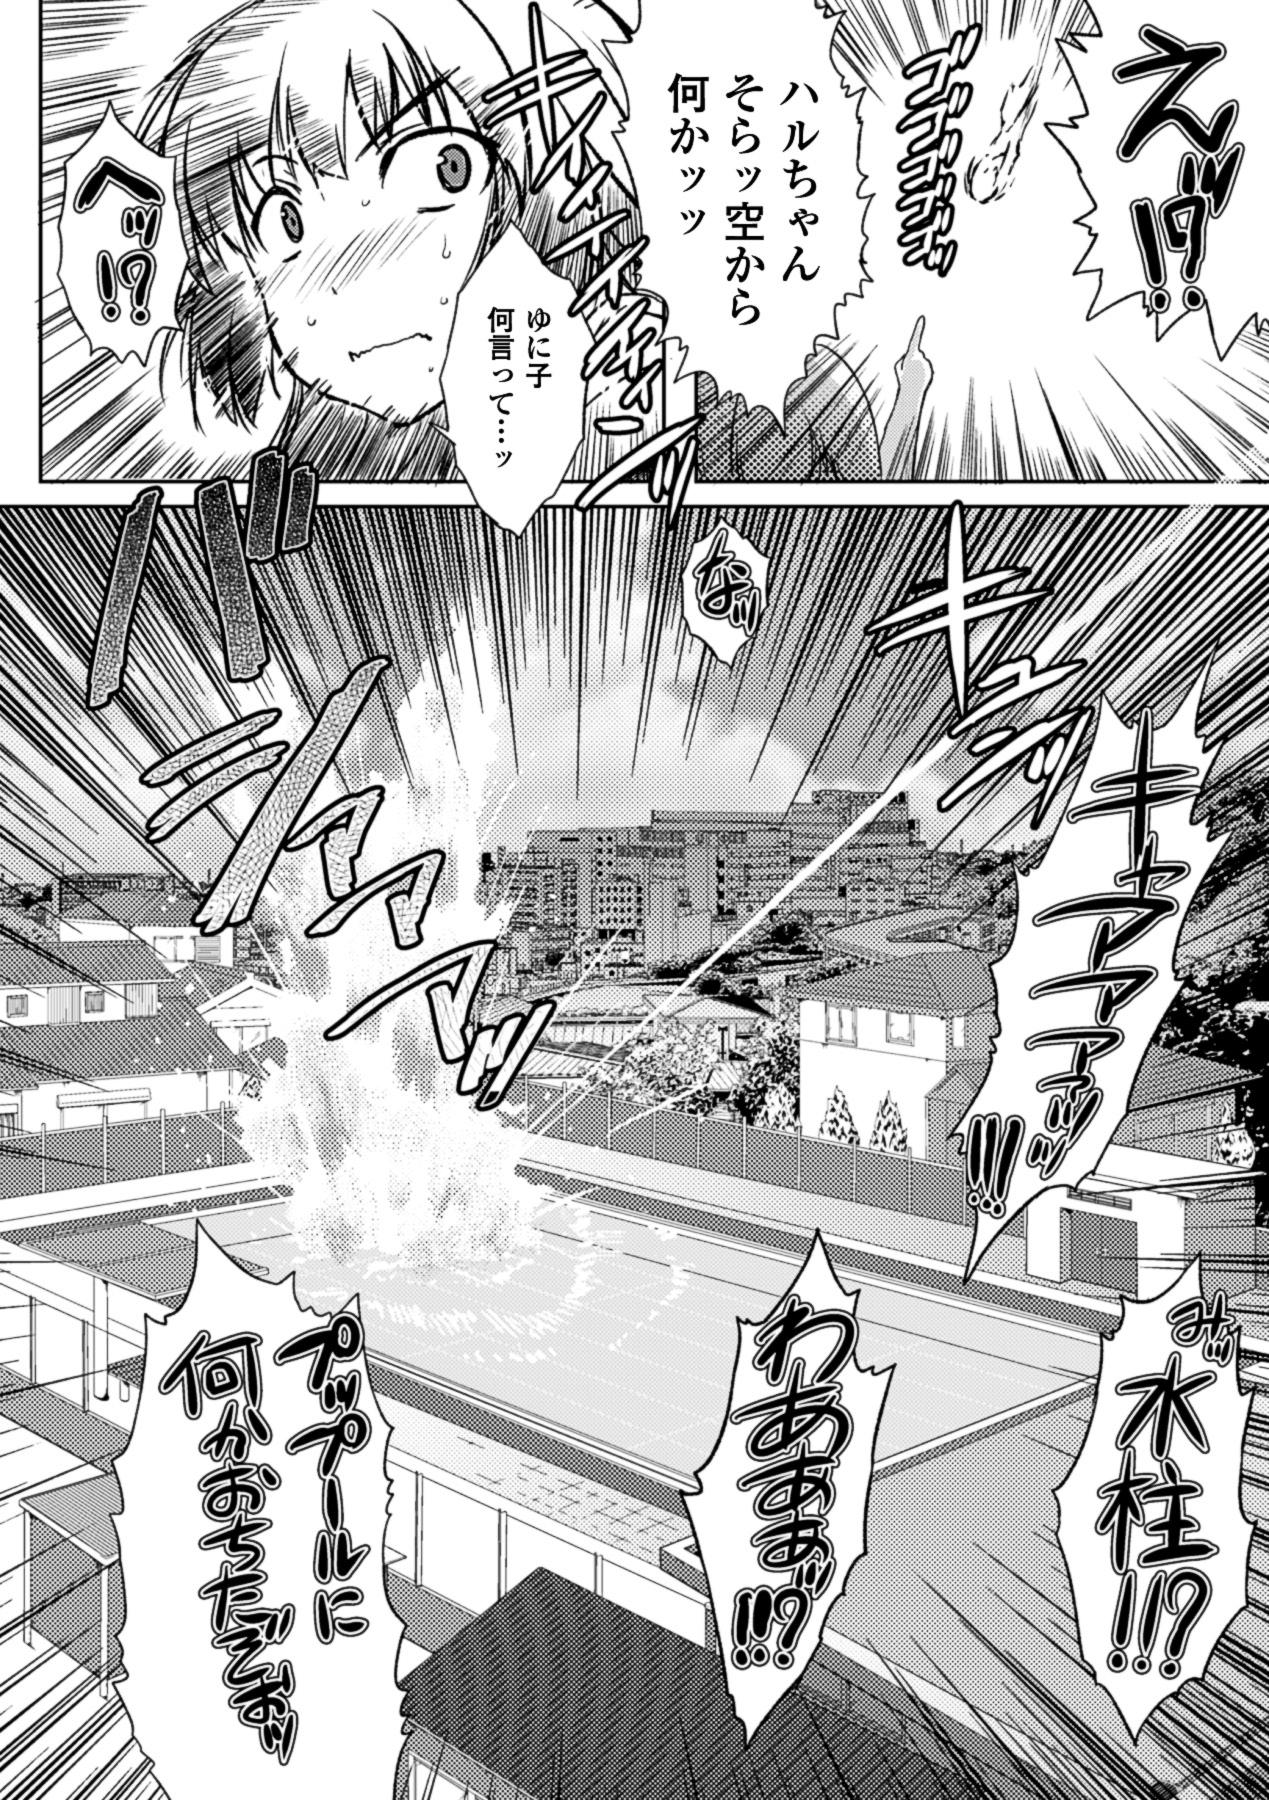 Phat Ass Kurokami × Kanojo Blow Job Contest - Page 10